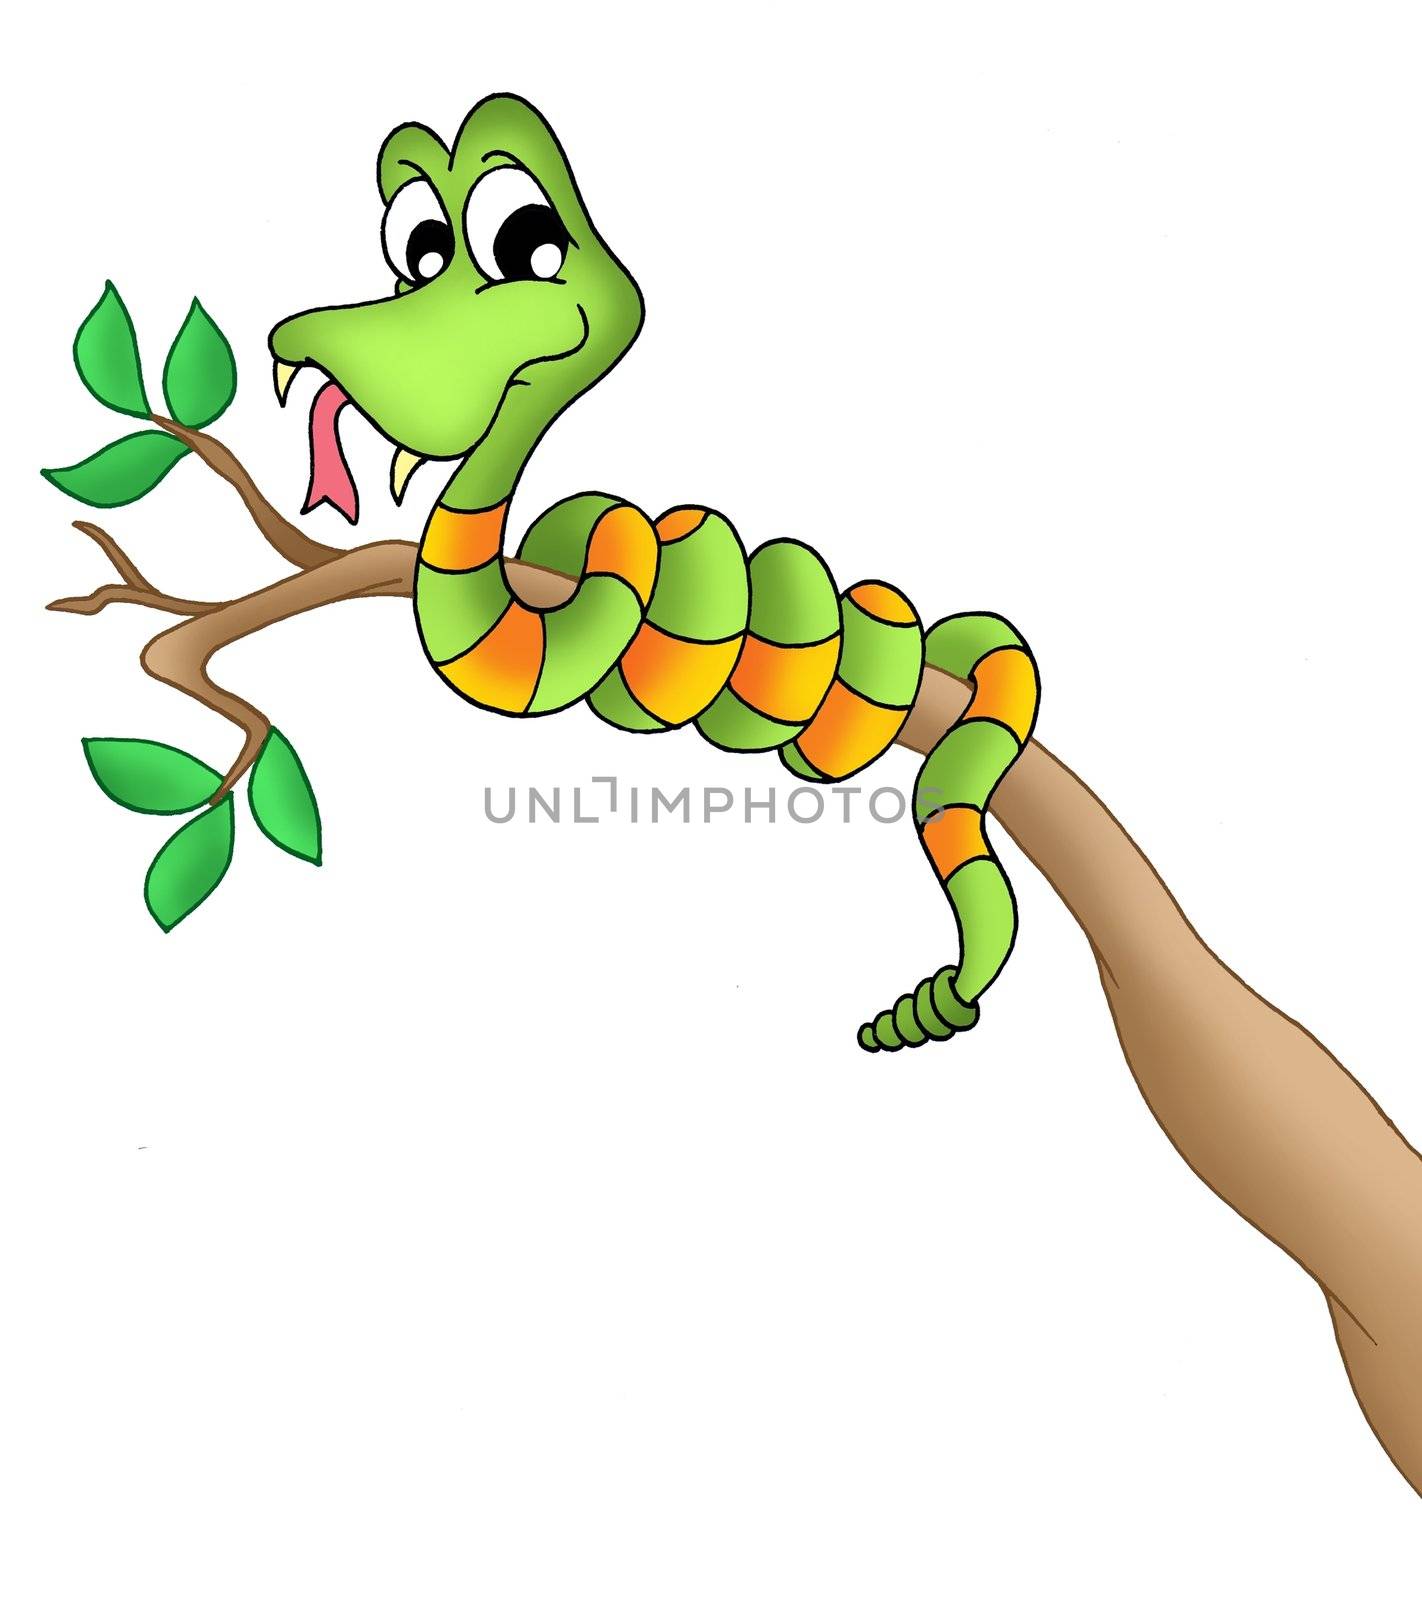 Snake on branch - color illustration.